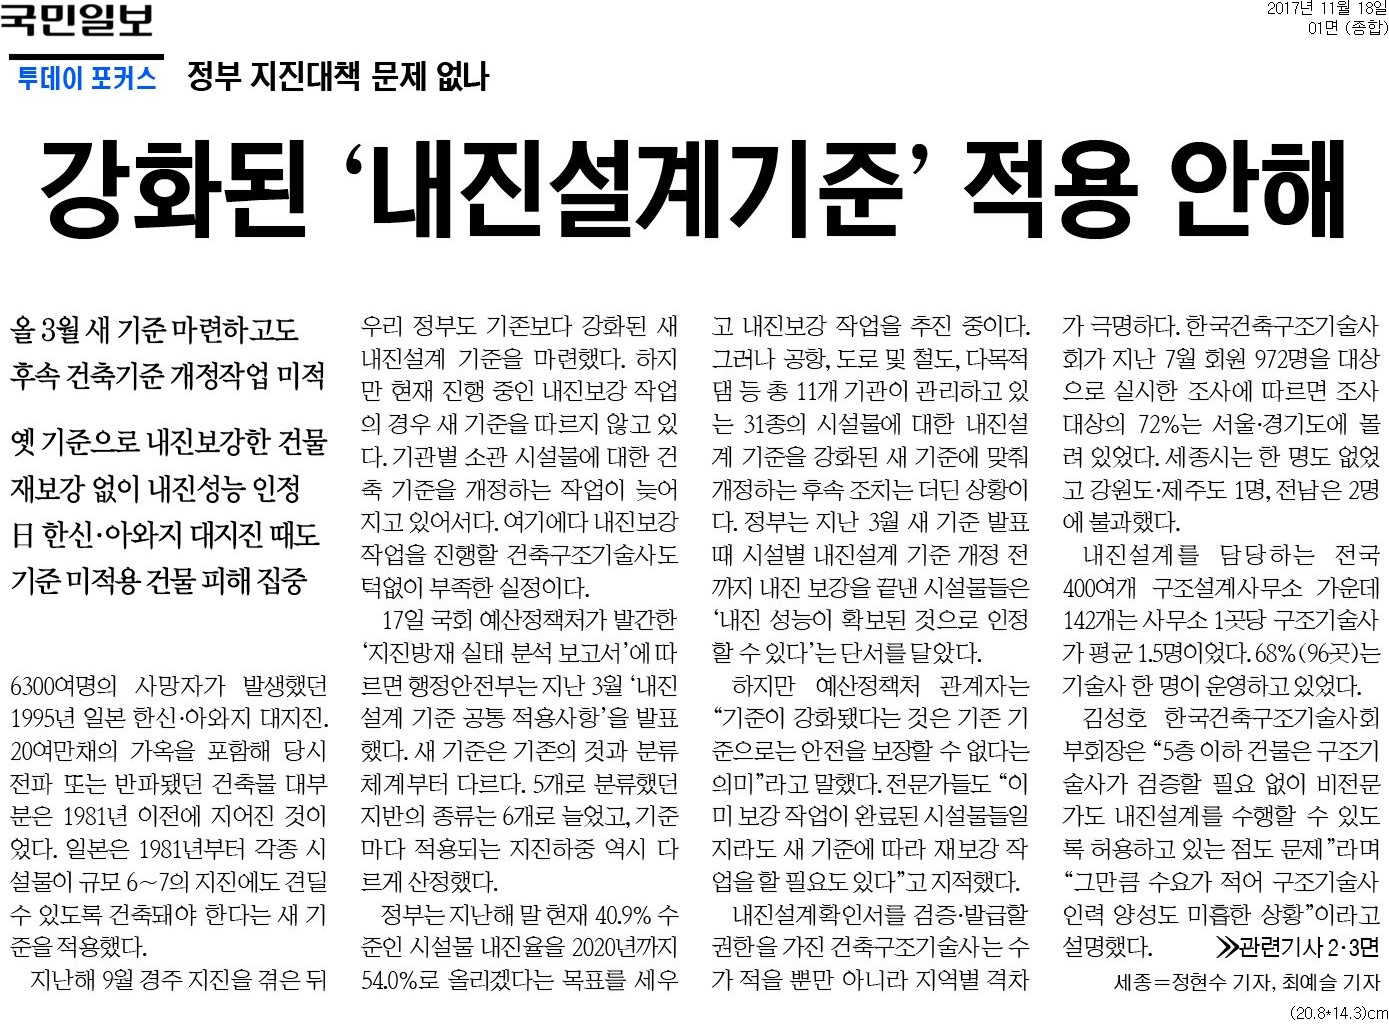 ▲ 18일 국민일보 1면 기사.